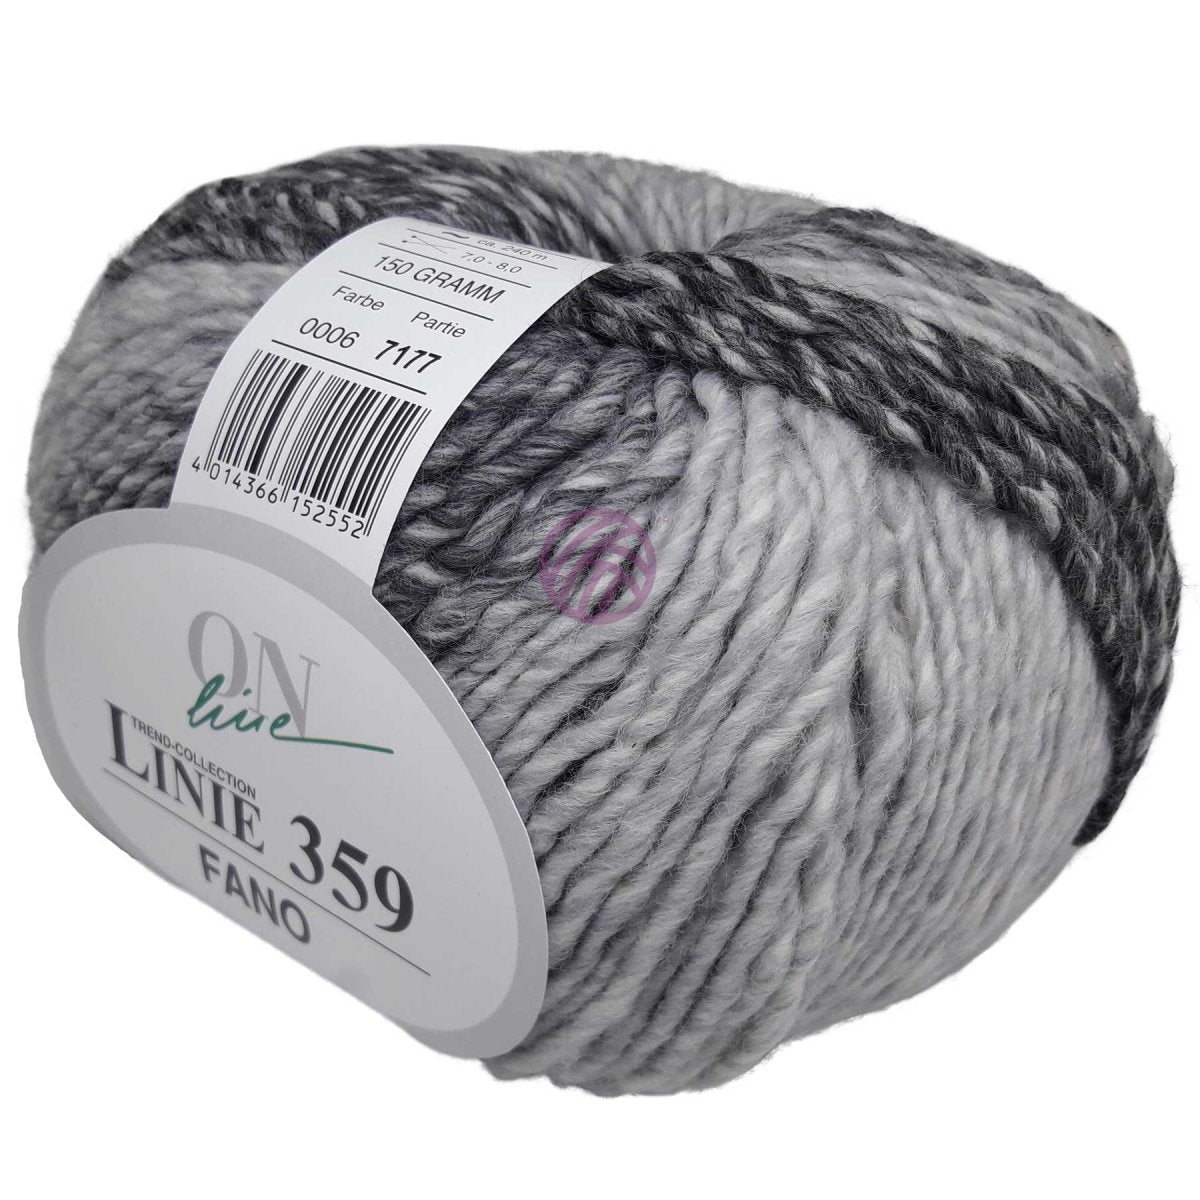 FANO - Crochetstores110359-0064014366152552